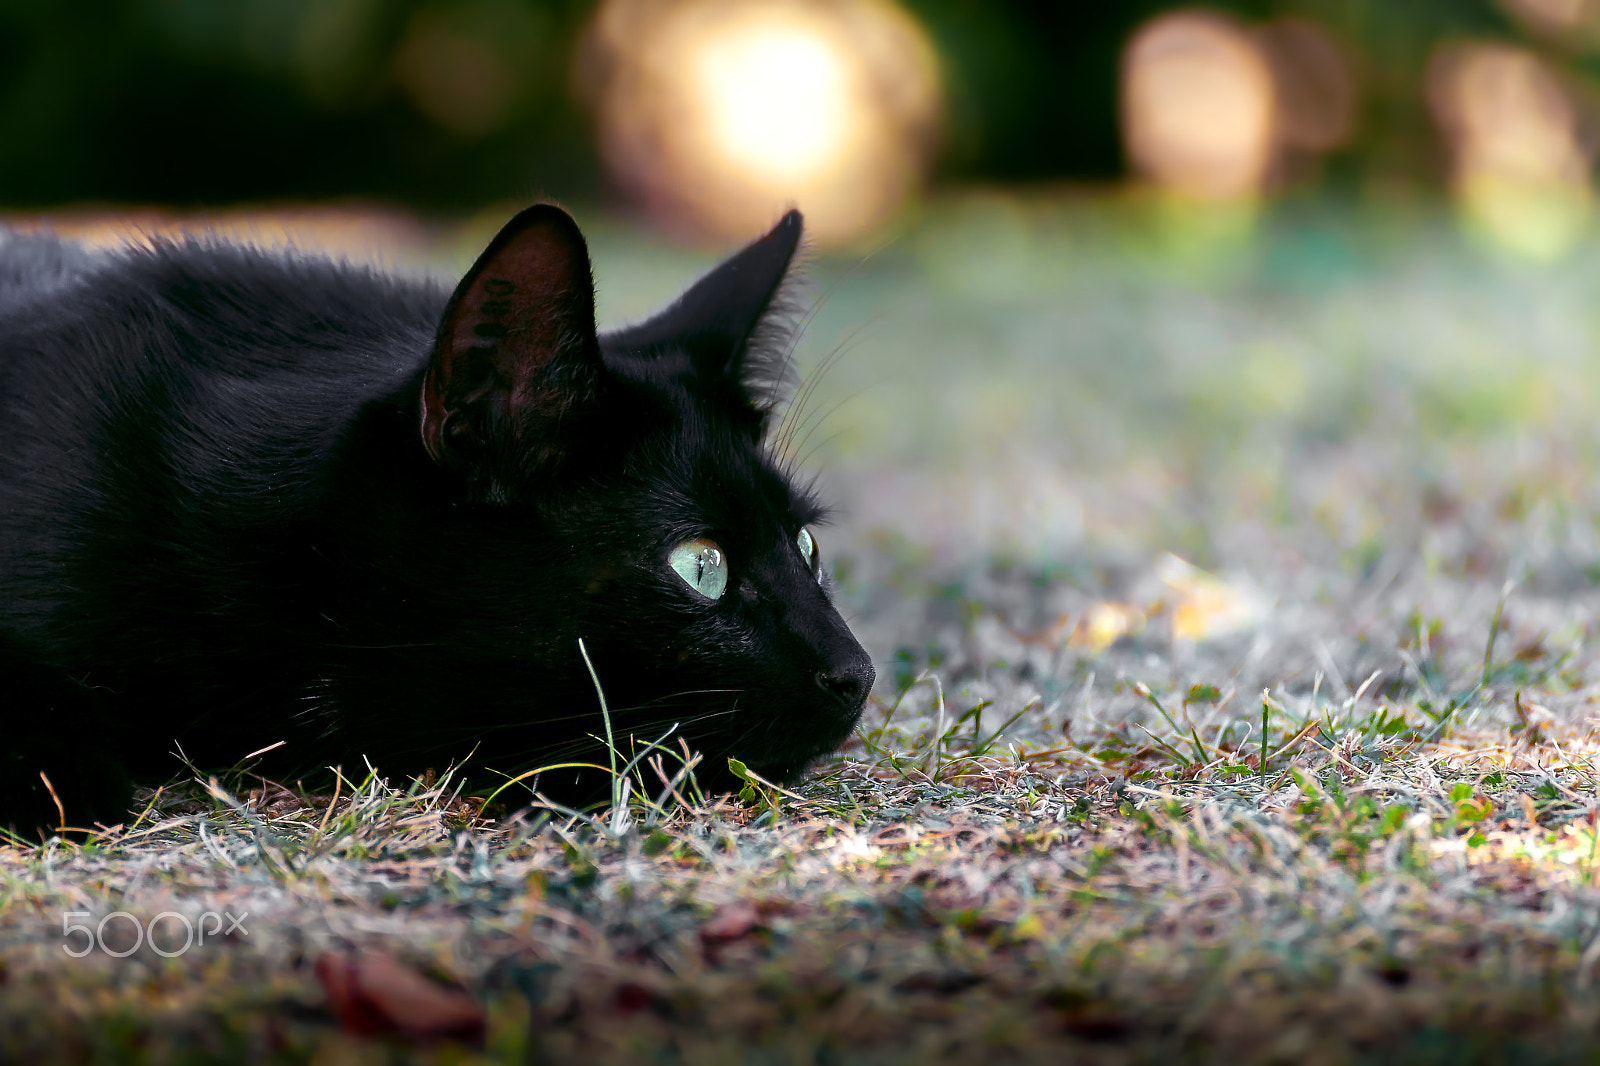 Canon EOS 5D sample photo. Cat portrait fips photography